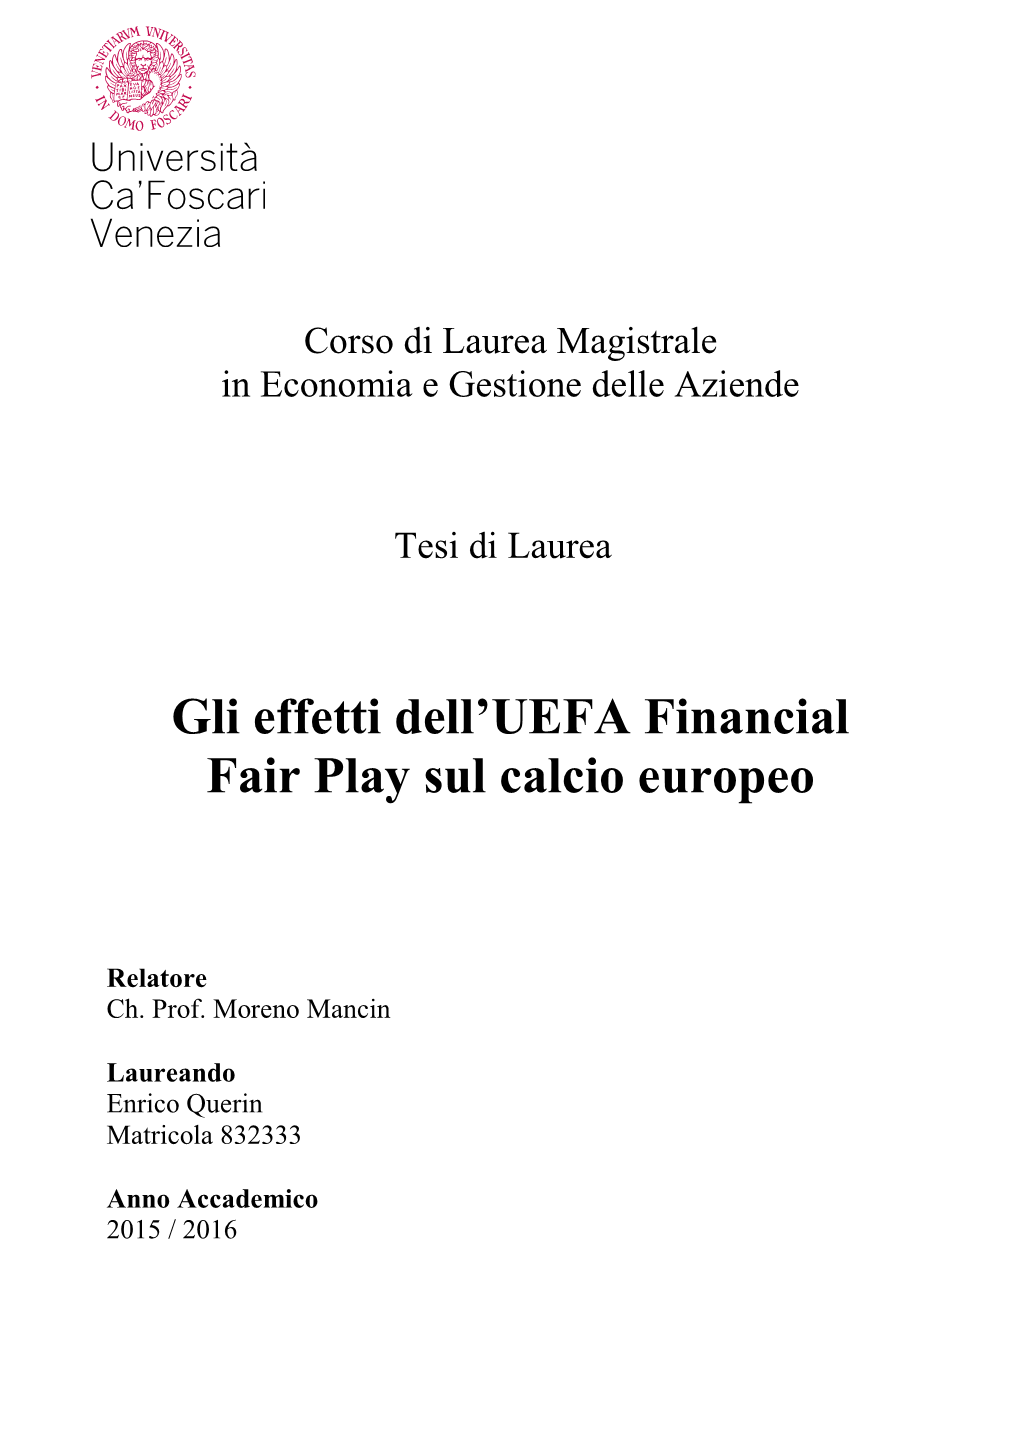 3. L'uefa Financial Fair Play